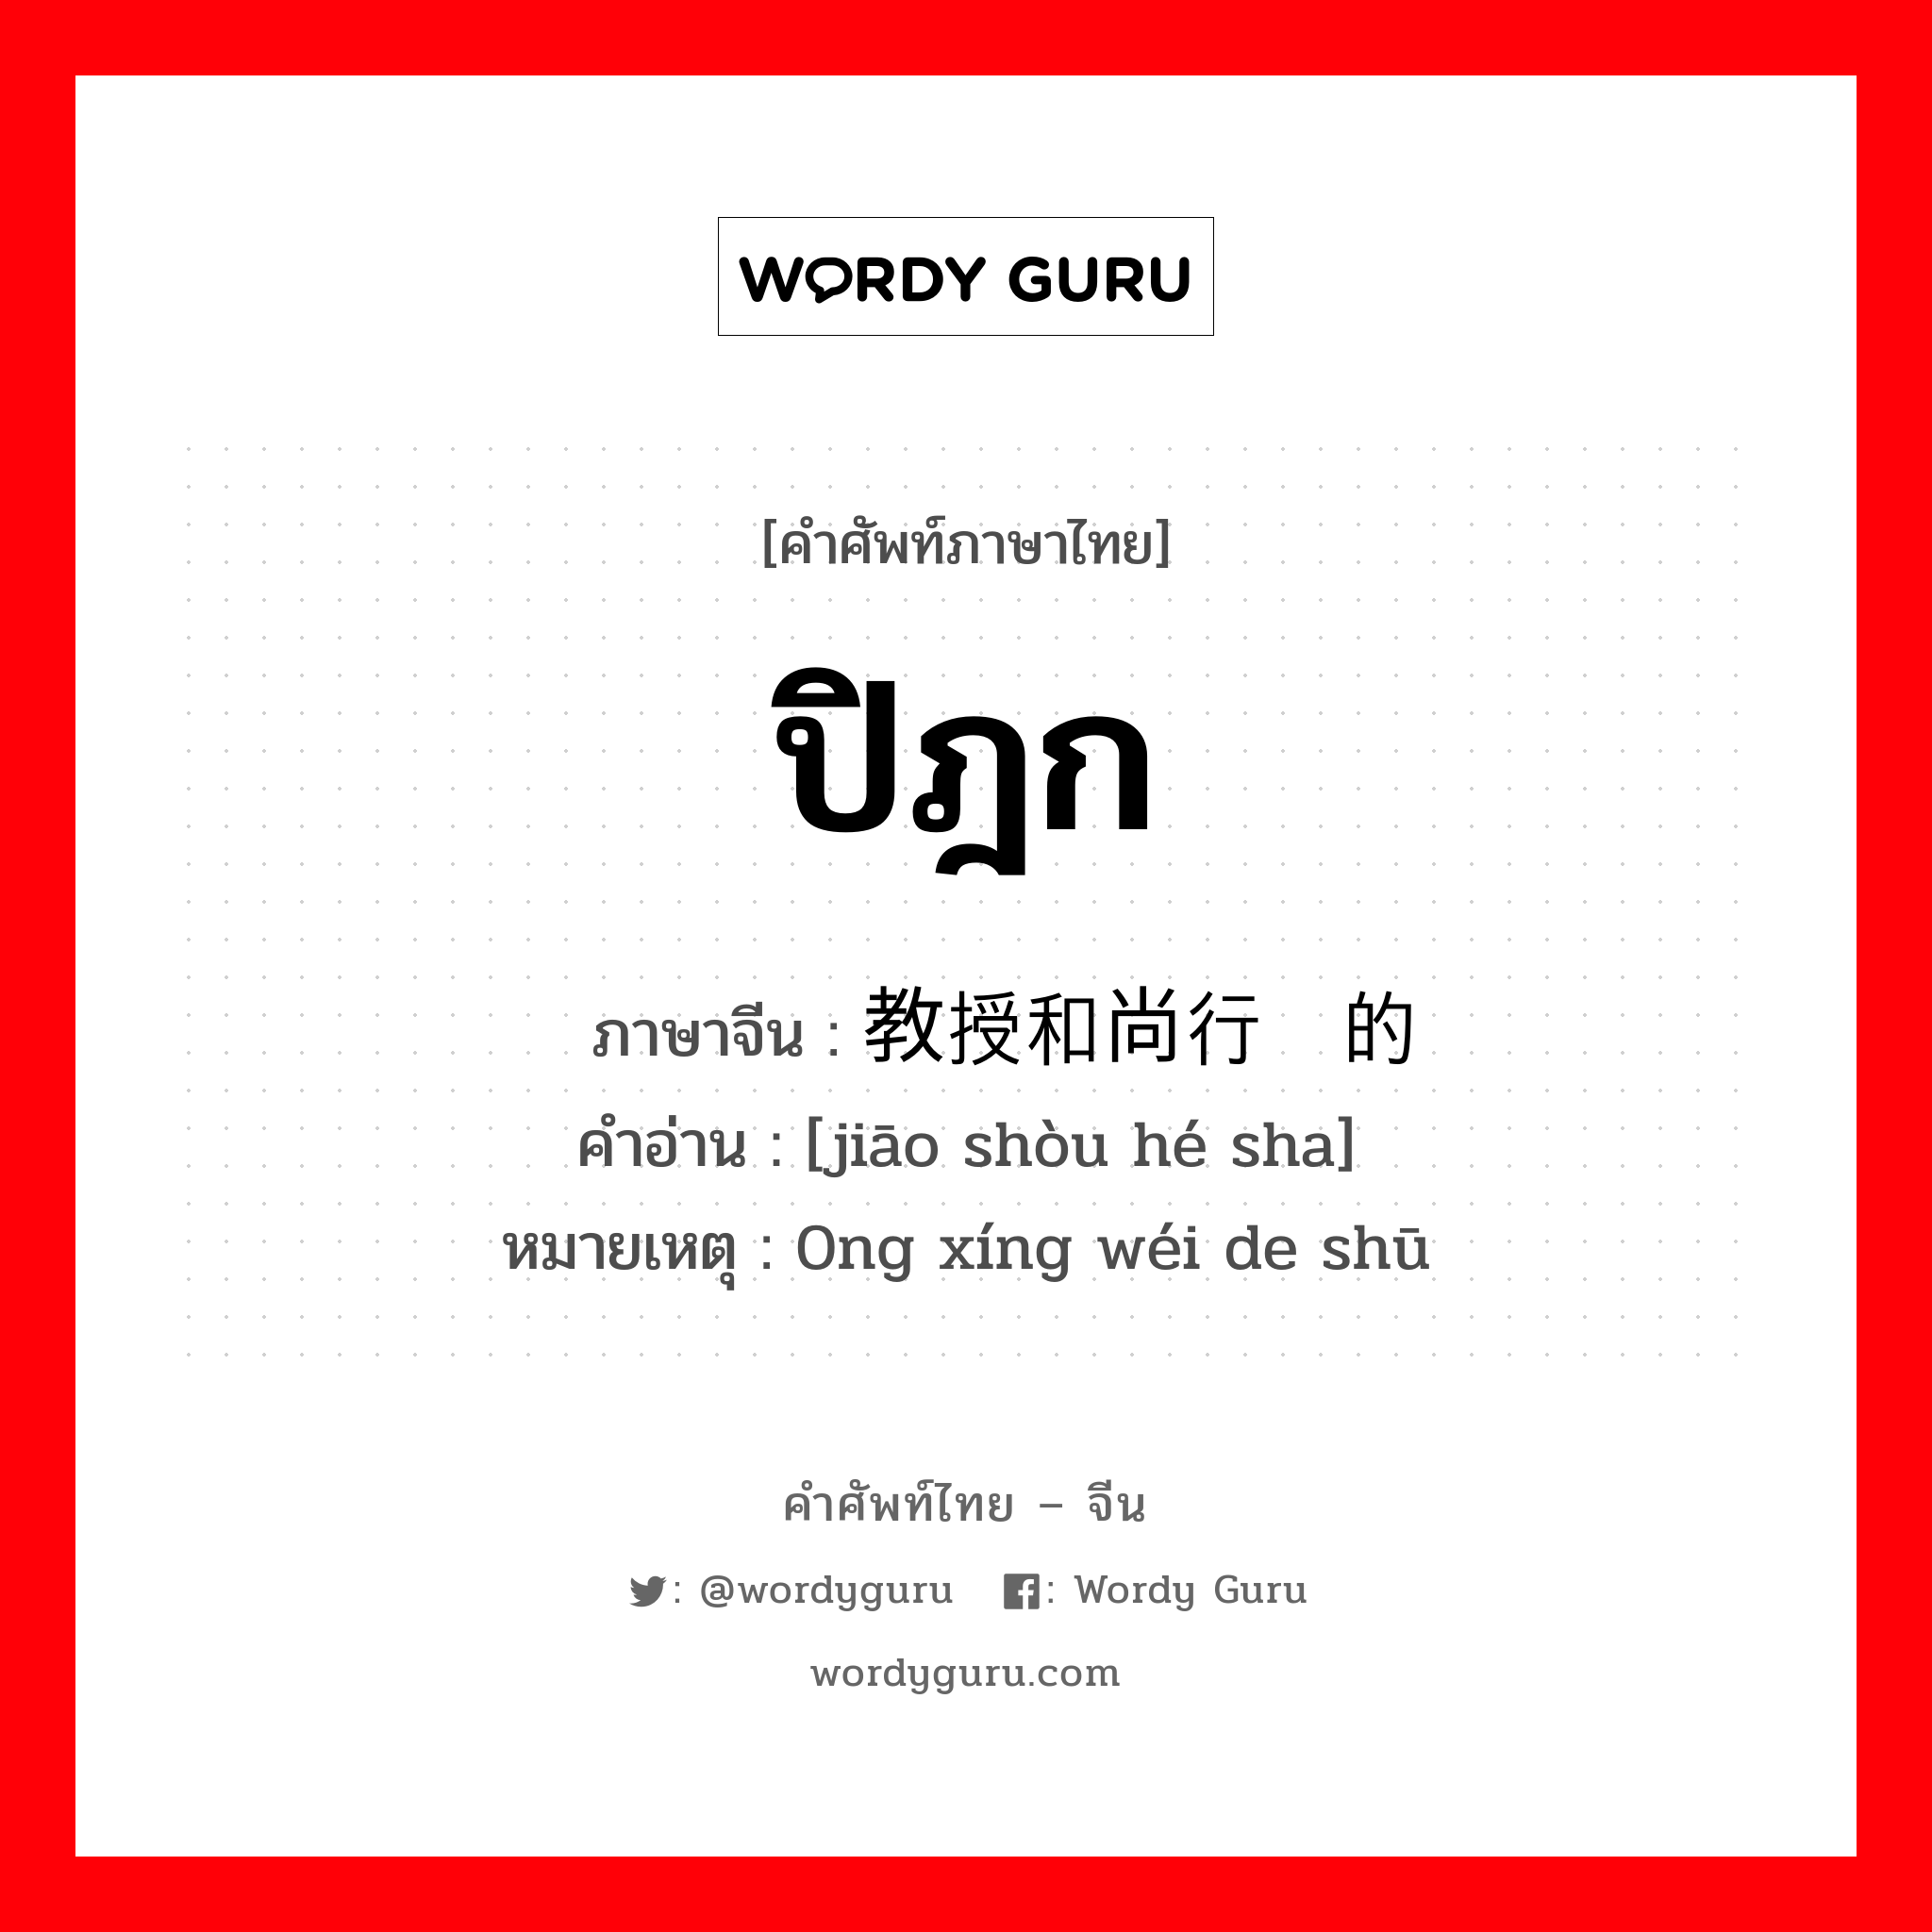 ปิฎก ภาษาจีนคืออะไร, คำศัพท์ภาษาไทย - จีน ปิฎก ภาษาจีน 教授和尚行为的书 คำอ่าน [jiāo shòu hé sha] หมายเหตุ 0ng xíng wéi de shū